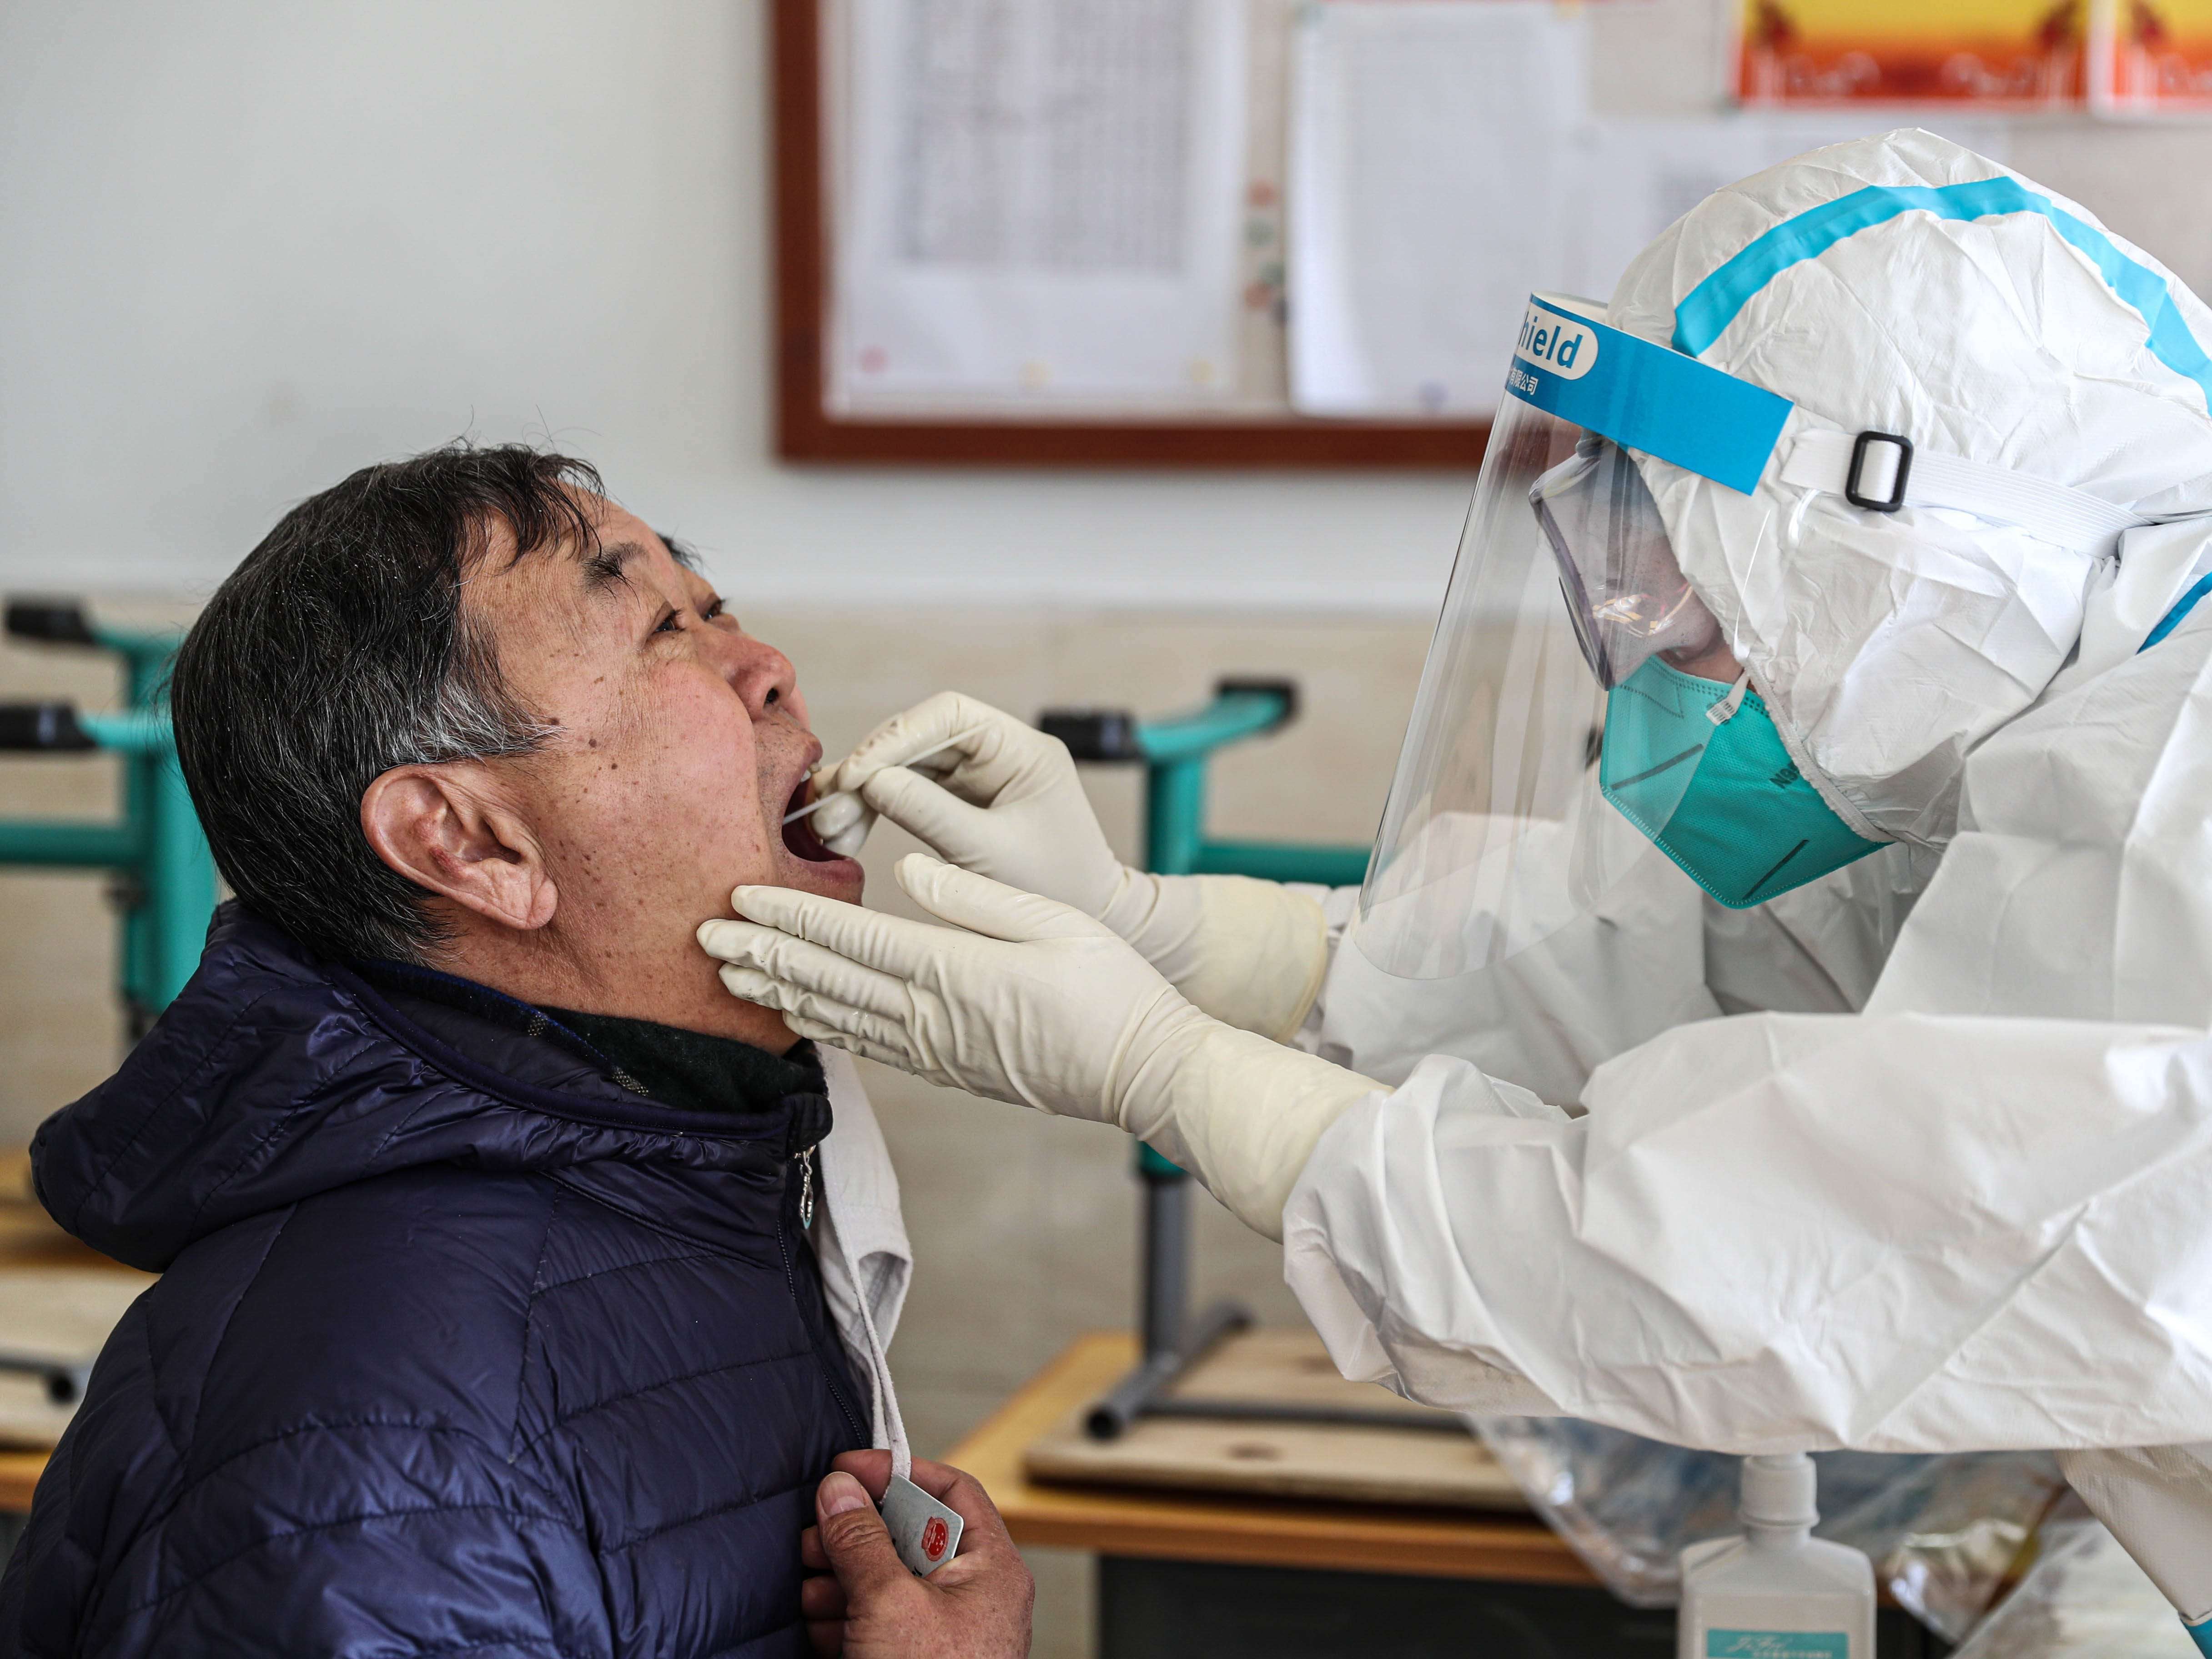 Η Κίνα μόλις ενέκρινε το πρώτο εμβόλιο COVID-19 καθώς αγωνίζεται να εμβολιάσει τον μεγαλύτερο πληθυσμό στον κόσμο